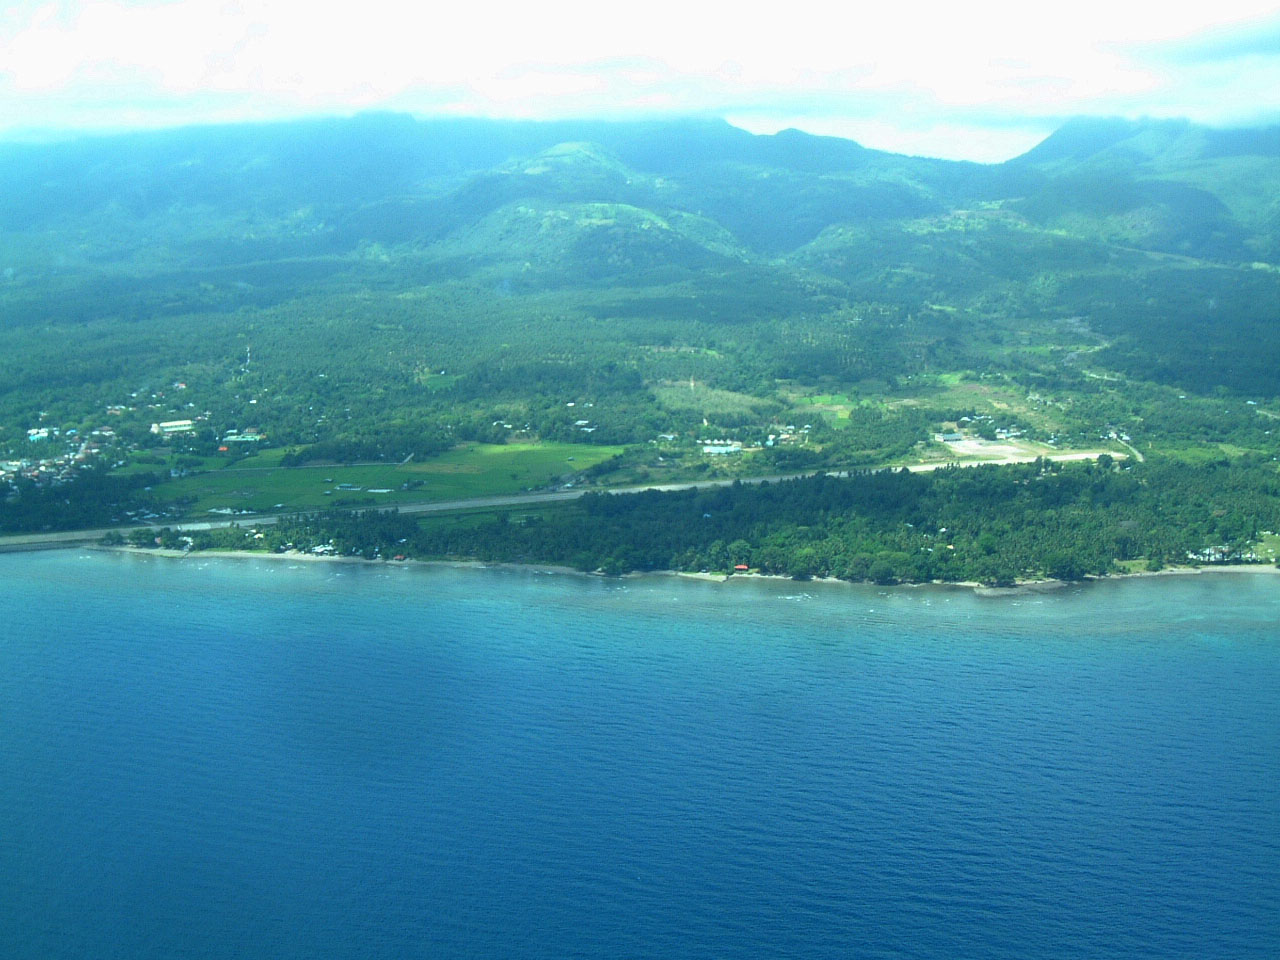 Camiguin Island Philippines